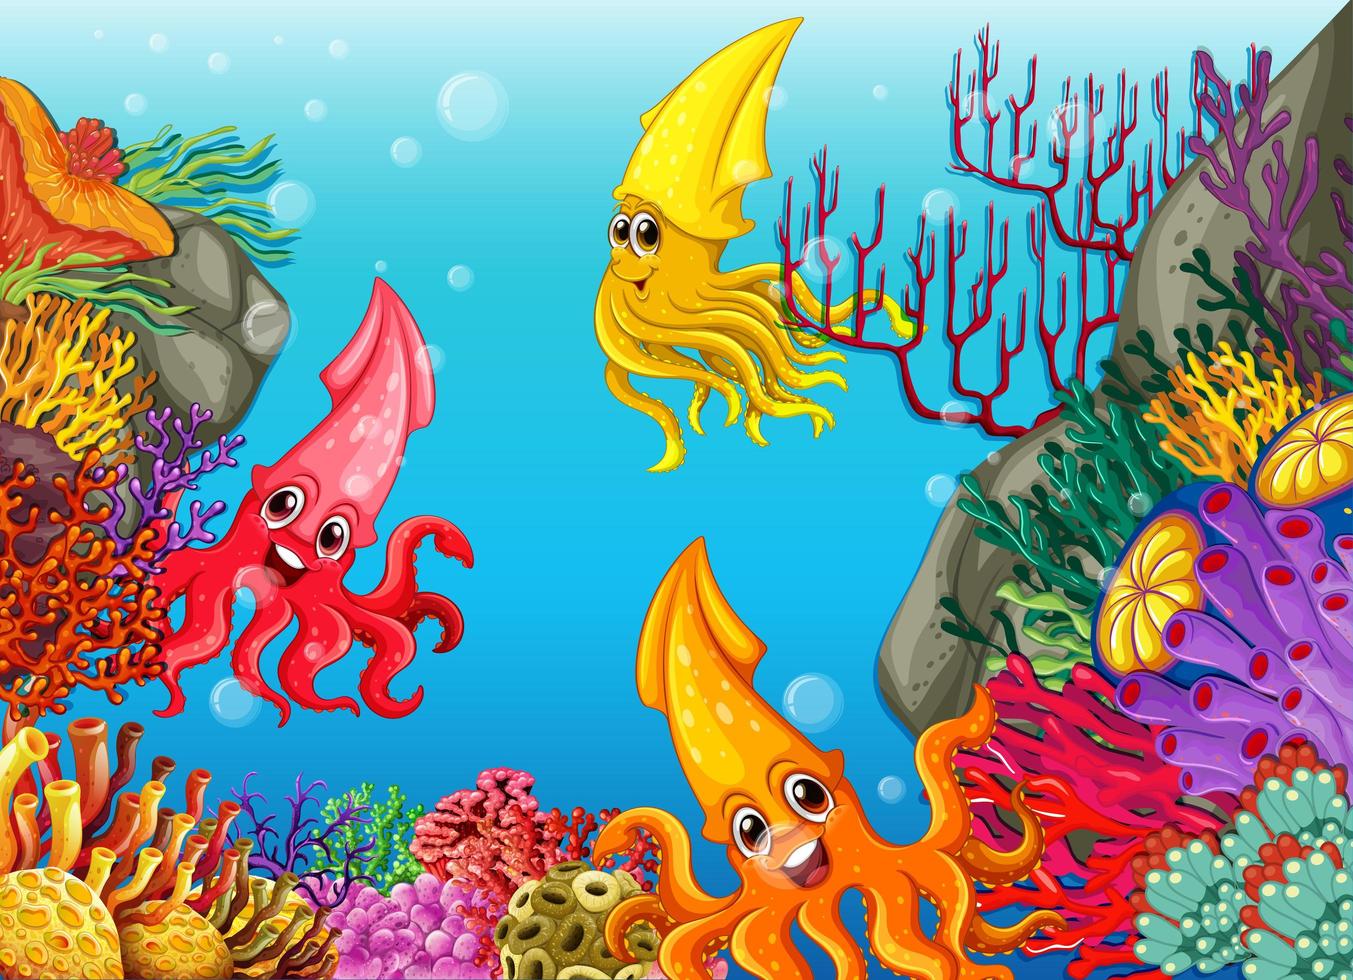 muitos personagens de desenho animado de lulas diferentes no fundo subaquático vetor